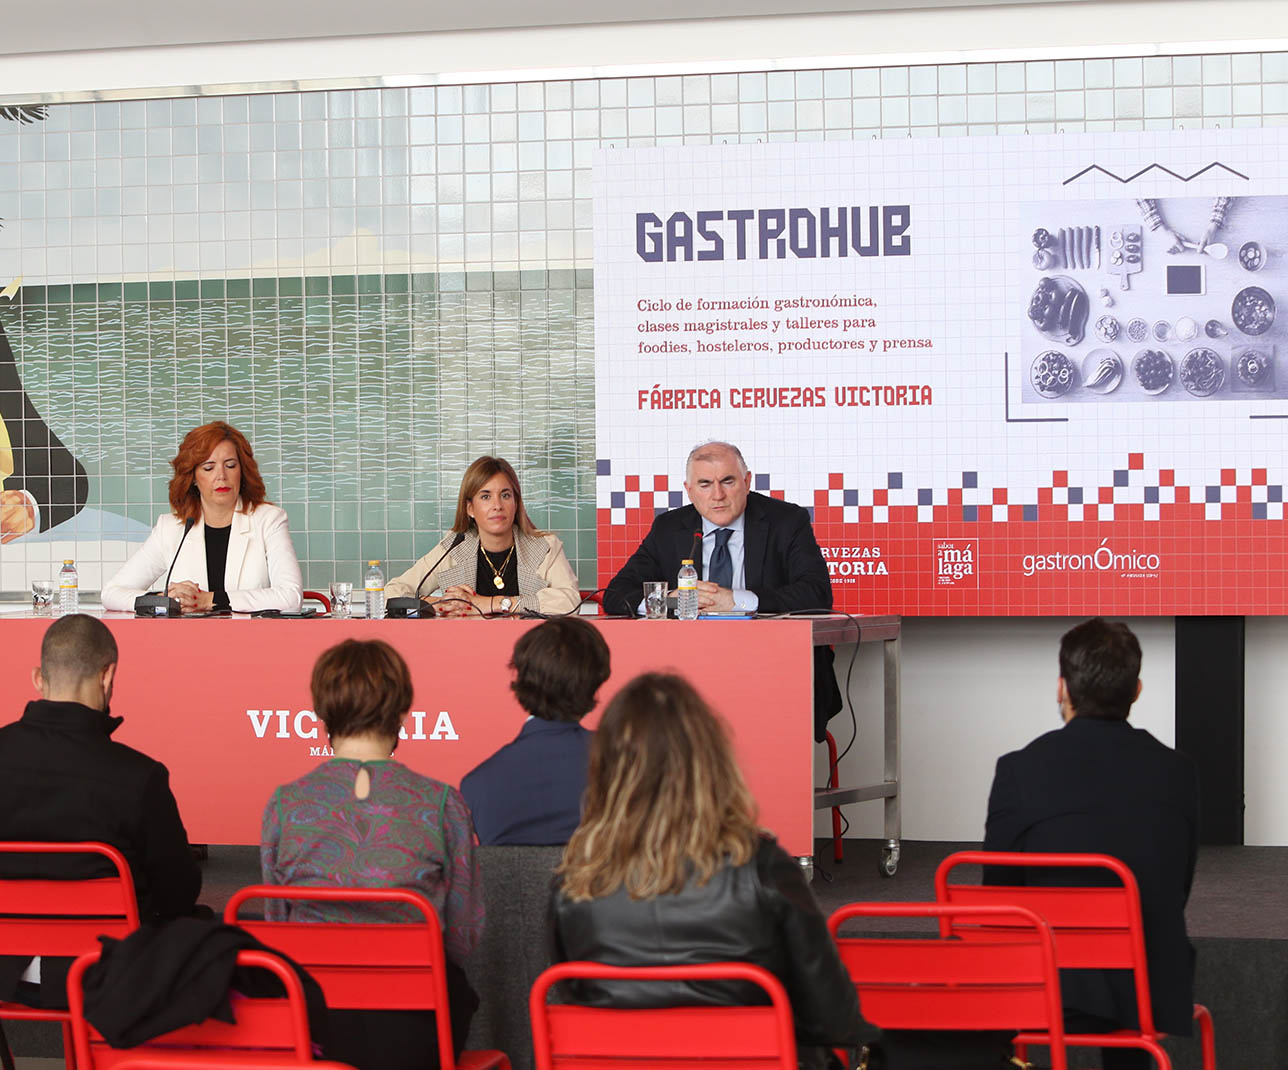 Gastrohub tiene como objetivo generar valor a los negocios de hostelería